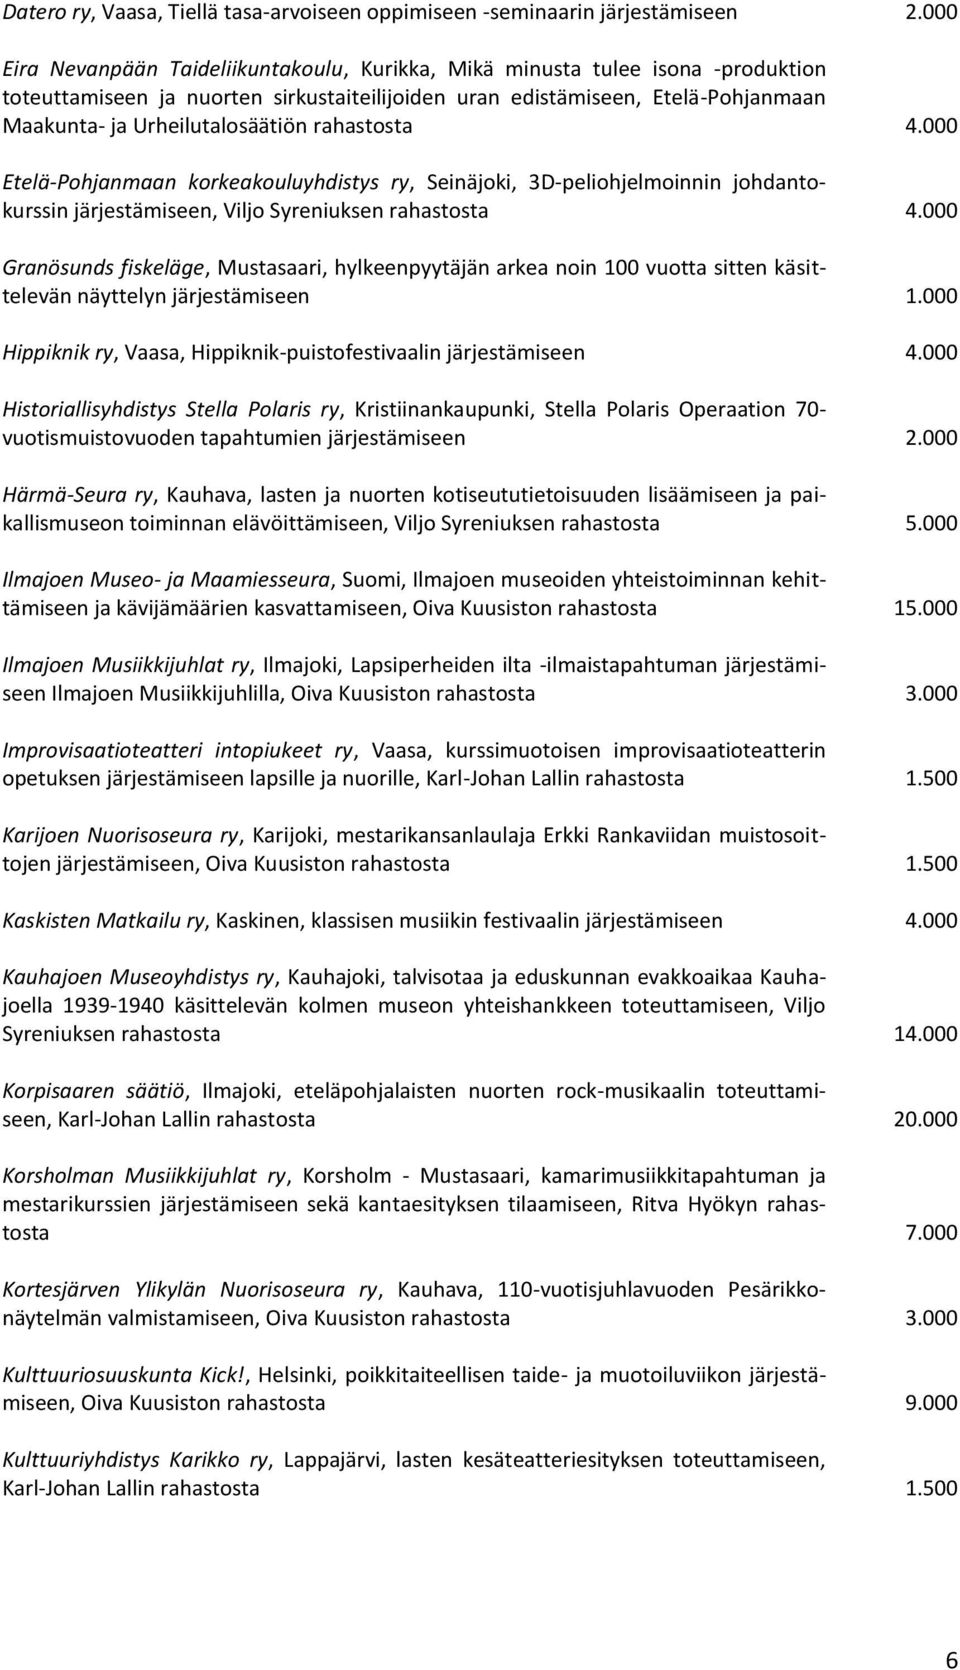 rahastosta 4.000 Etelä-Pohjanmaan korkeakouluyhdistys ry, Seinäjoki, 3D-peliohjelmoinnin johdantokurssin järjestämiseen, Viljo Syreniuksen rahastosta 4.